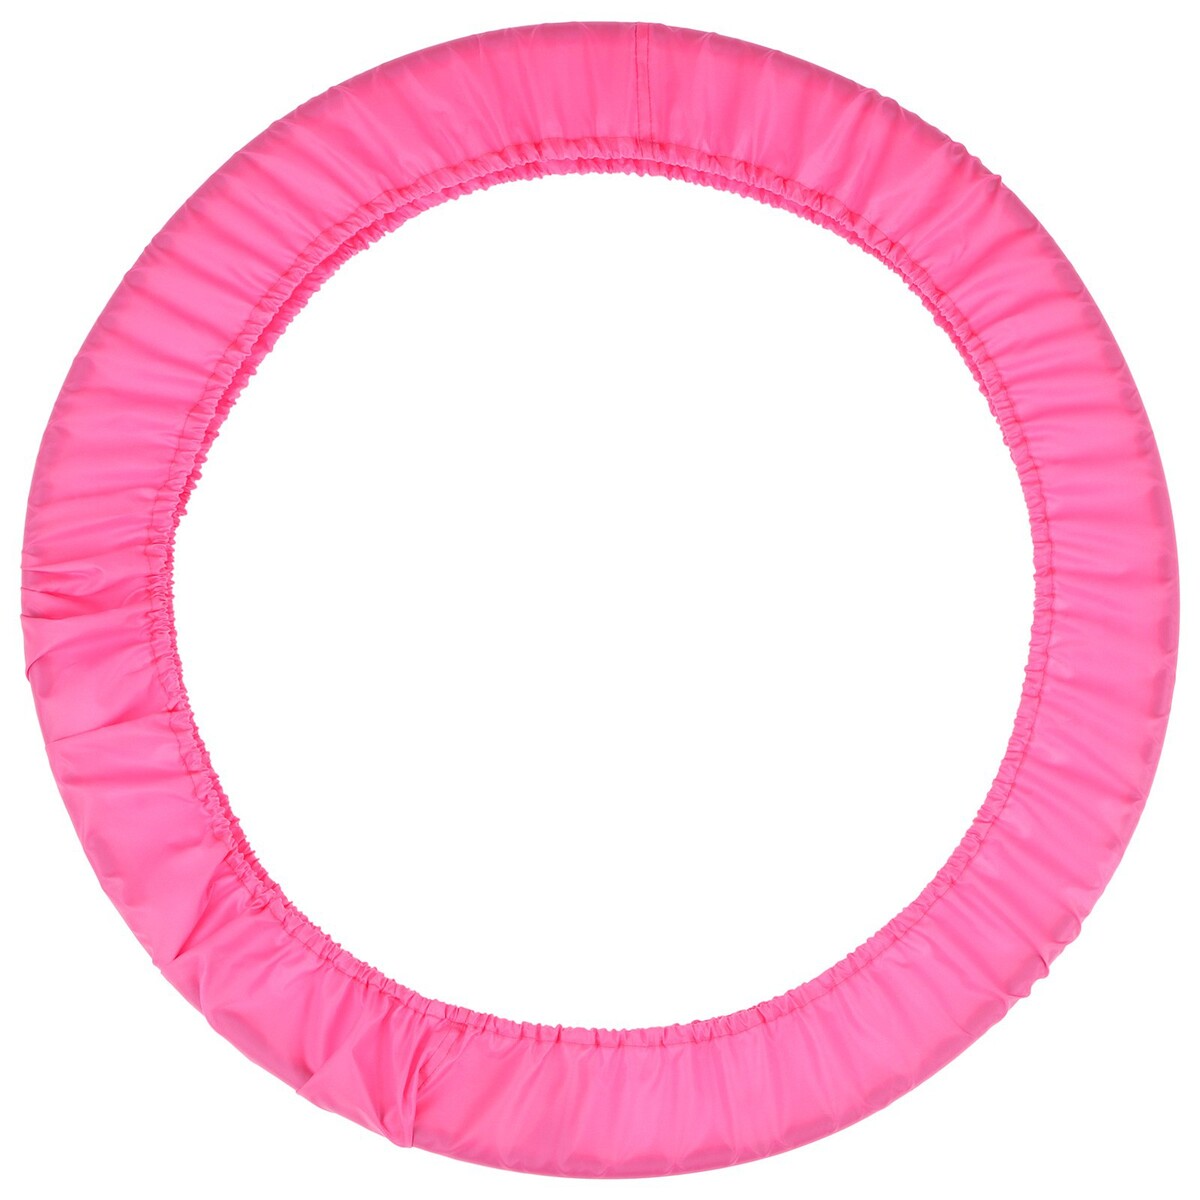 Чехол для обруча grace dance, d=90 см, цвет розовый чехол на подушку с кисточками этель розовый 45х45 см 100% п э велюр